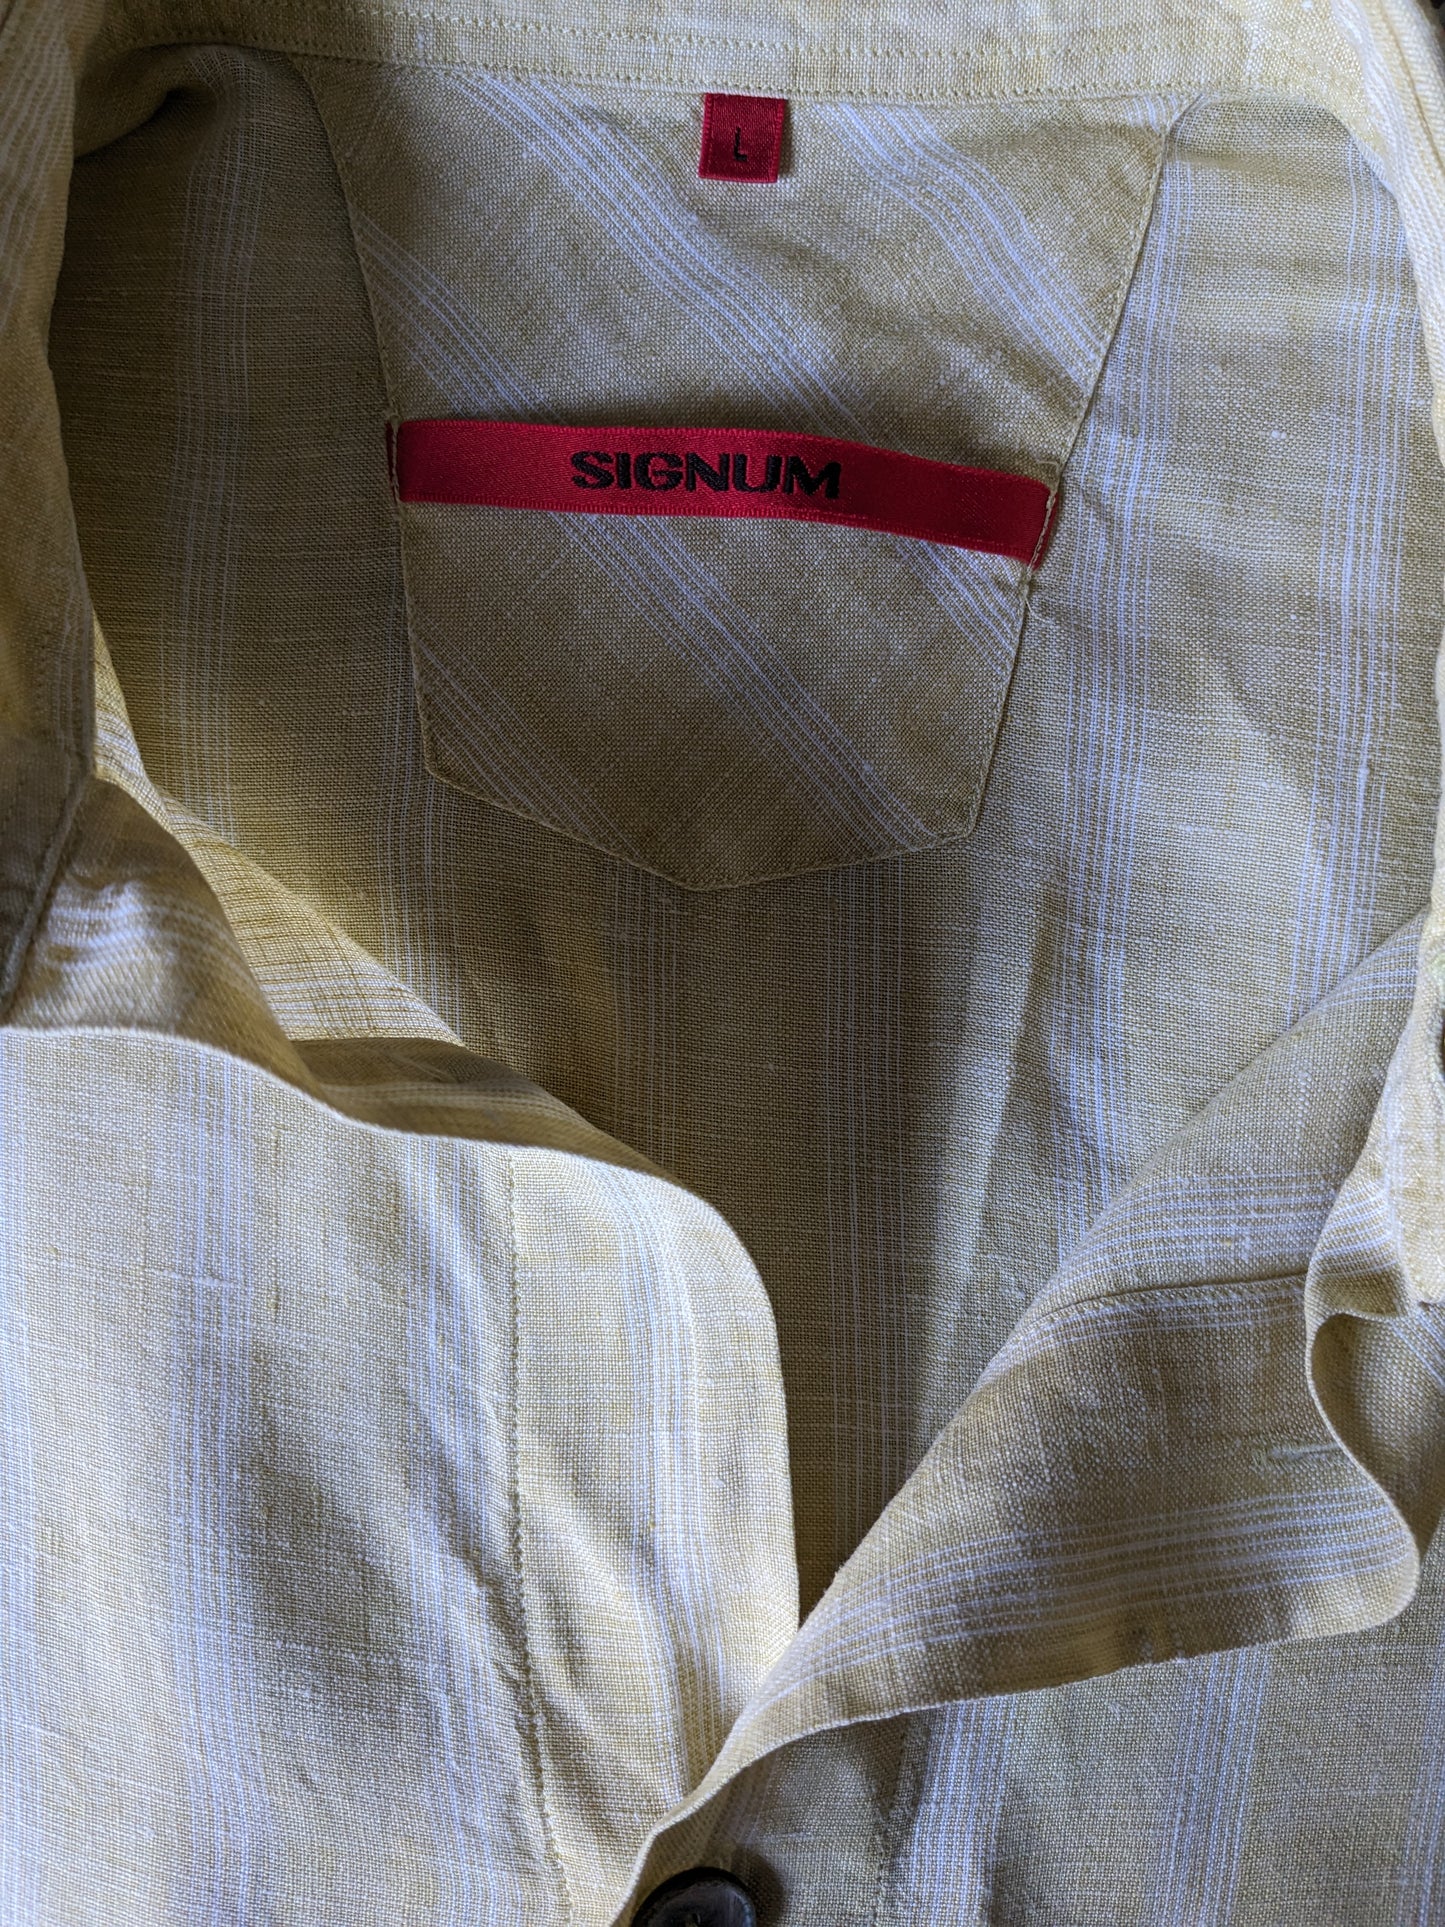 Vintage Linnen Signum overhemd korte mouw. Grotere knopen. Wit Geel geruit. Maat L / XL.